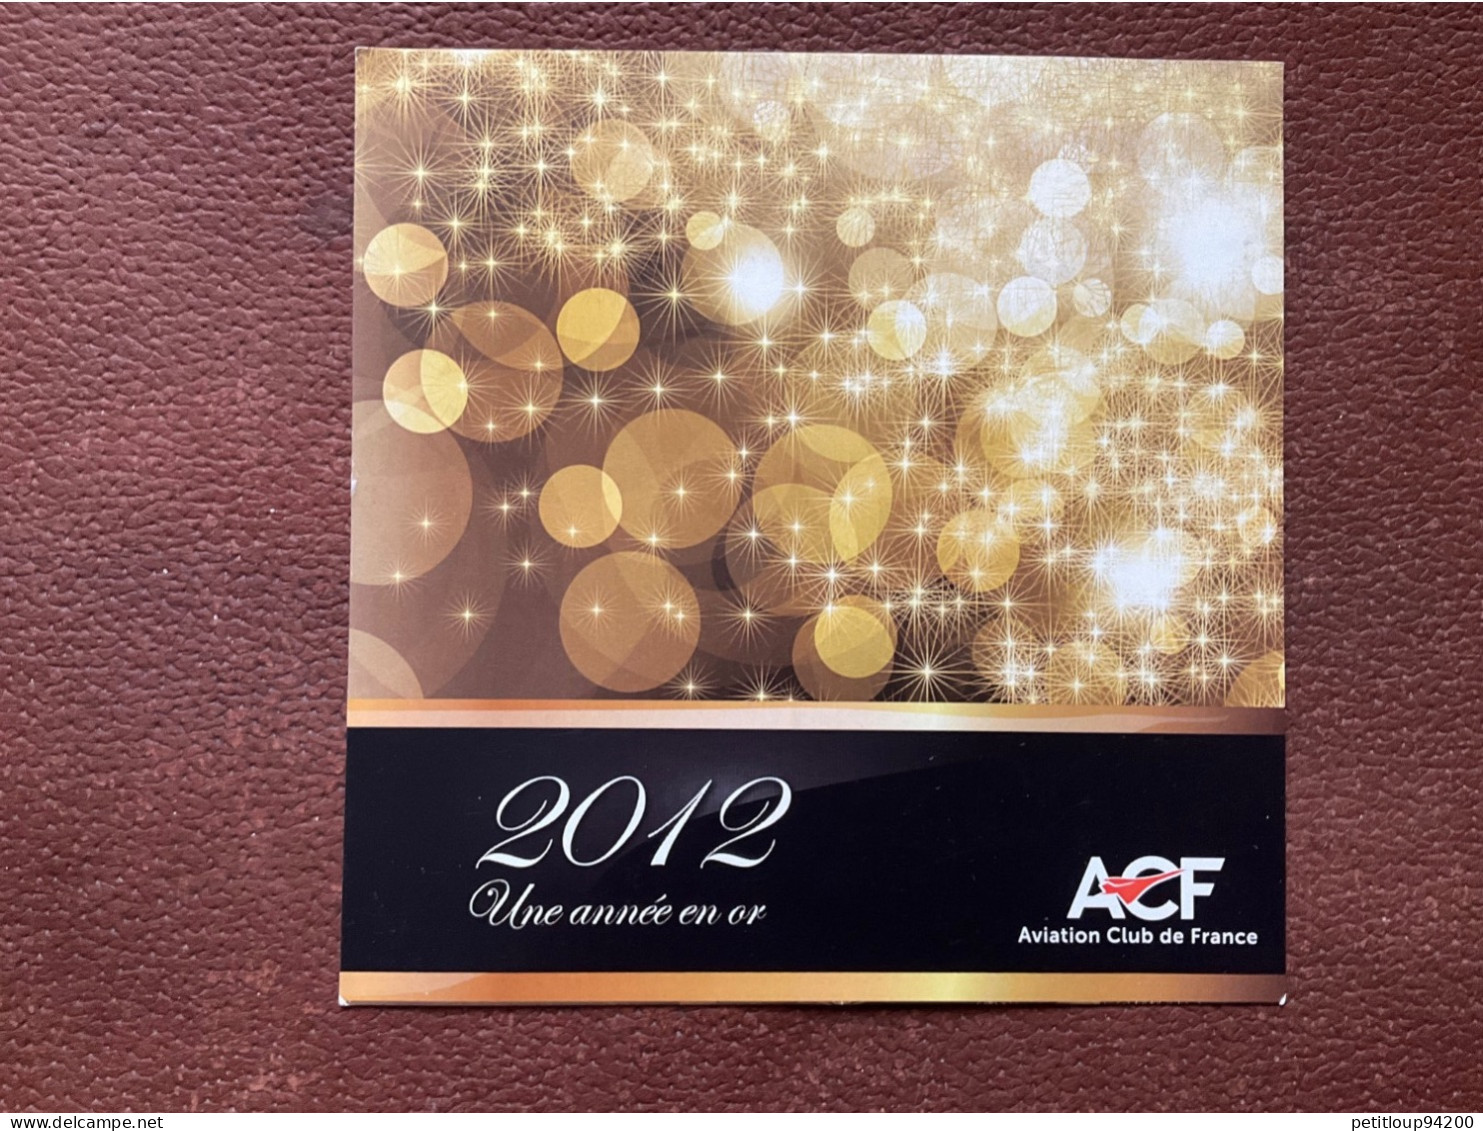 ACF Aviation Club De France UNE ANNÉE EN OR 2012 - New Year